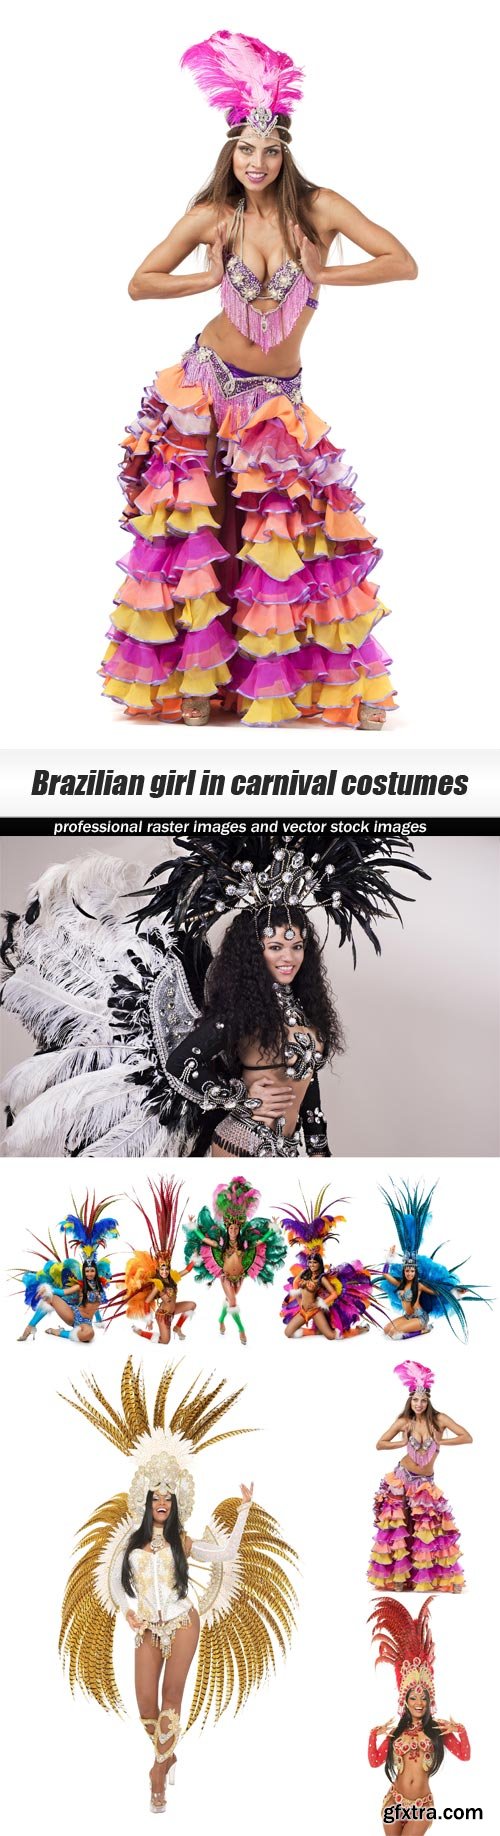 Brazilian girl in carnival costumes